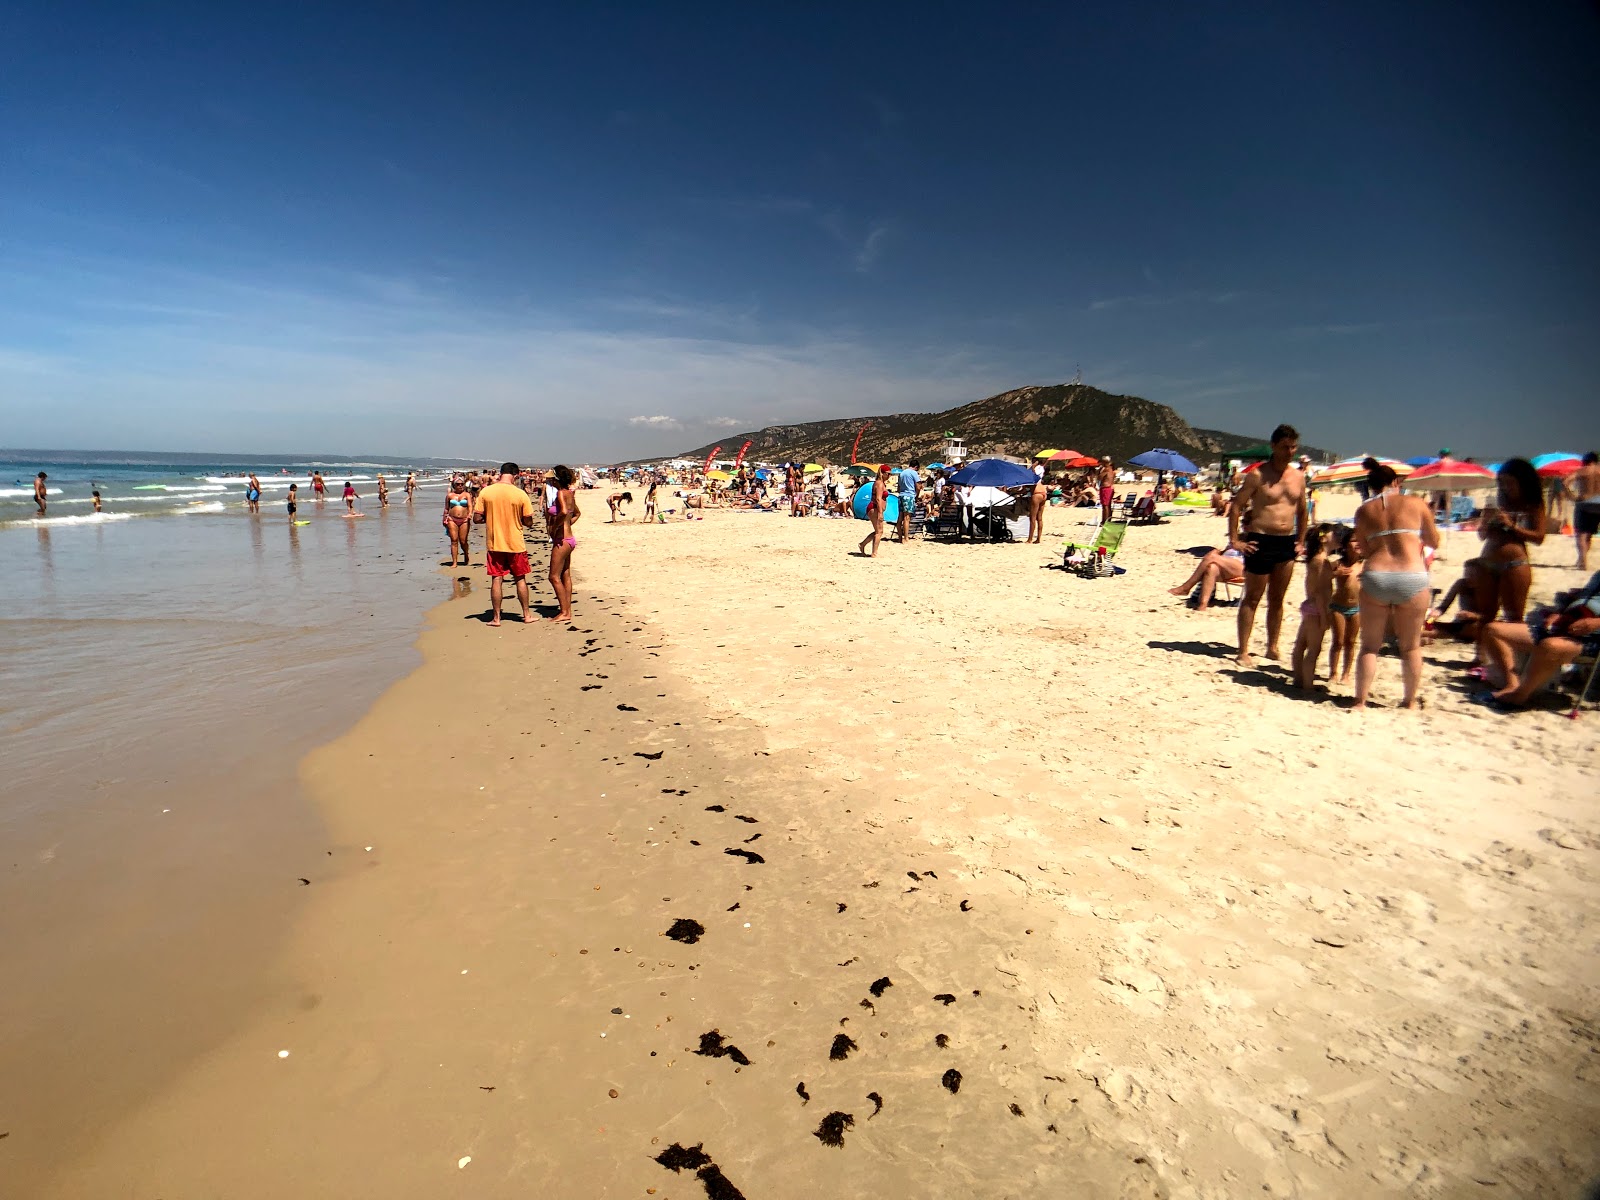 Playa de Zahara'in fotoğrafı - rahatlamayı sevenler arasında popüler bir yer